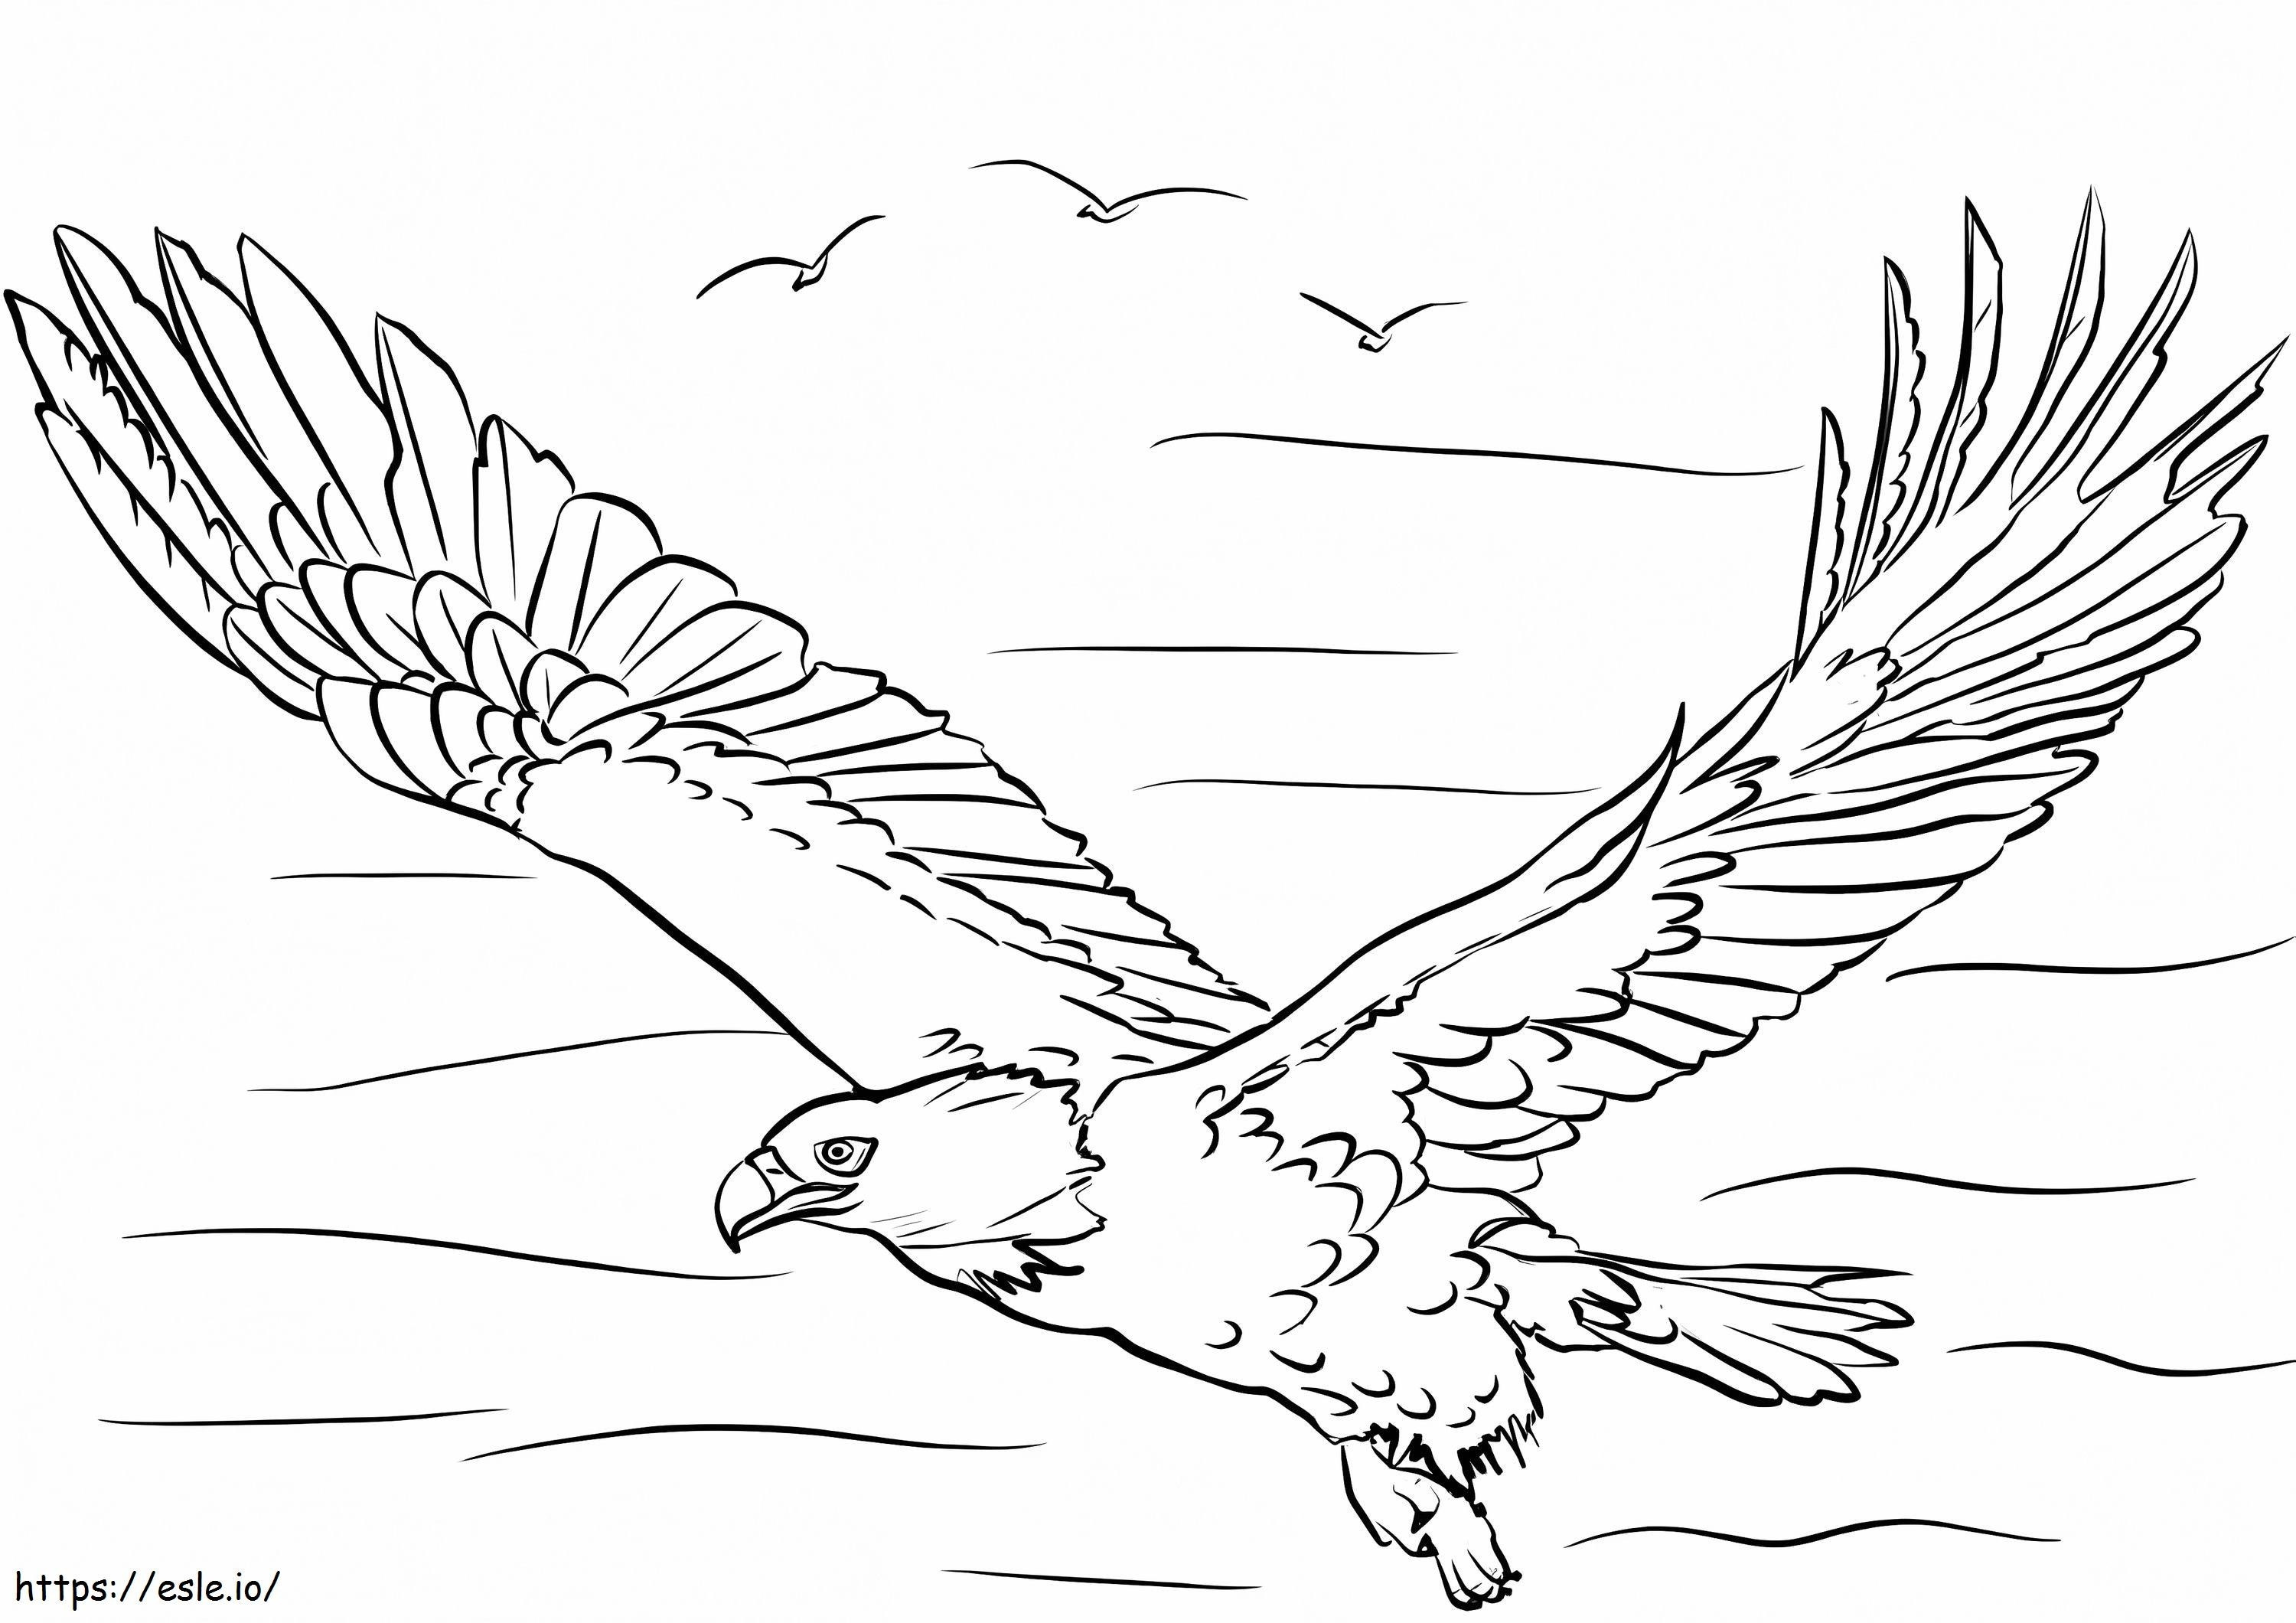 Águila volando para colorear